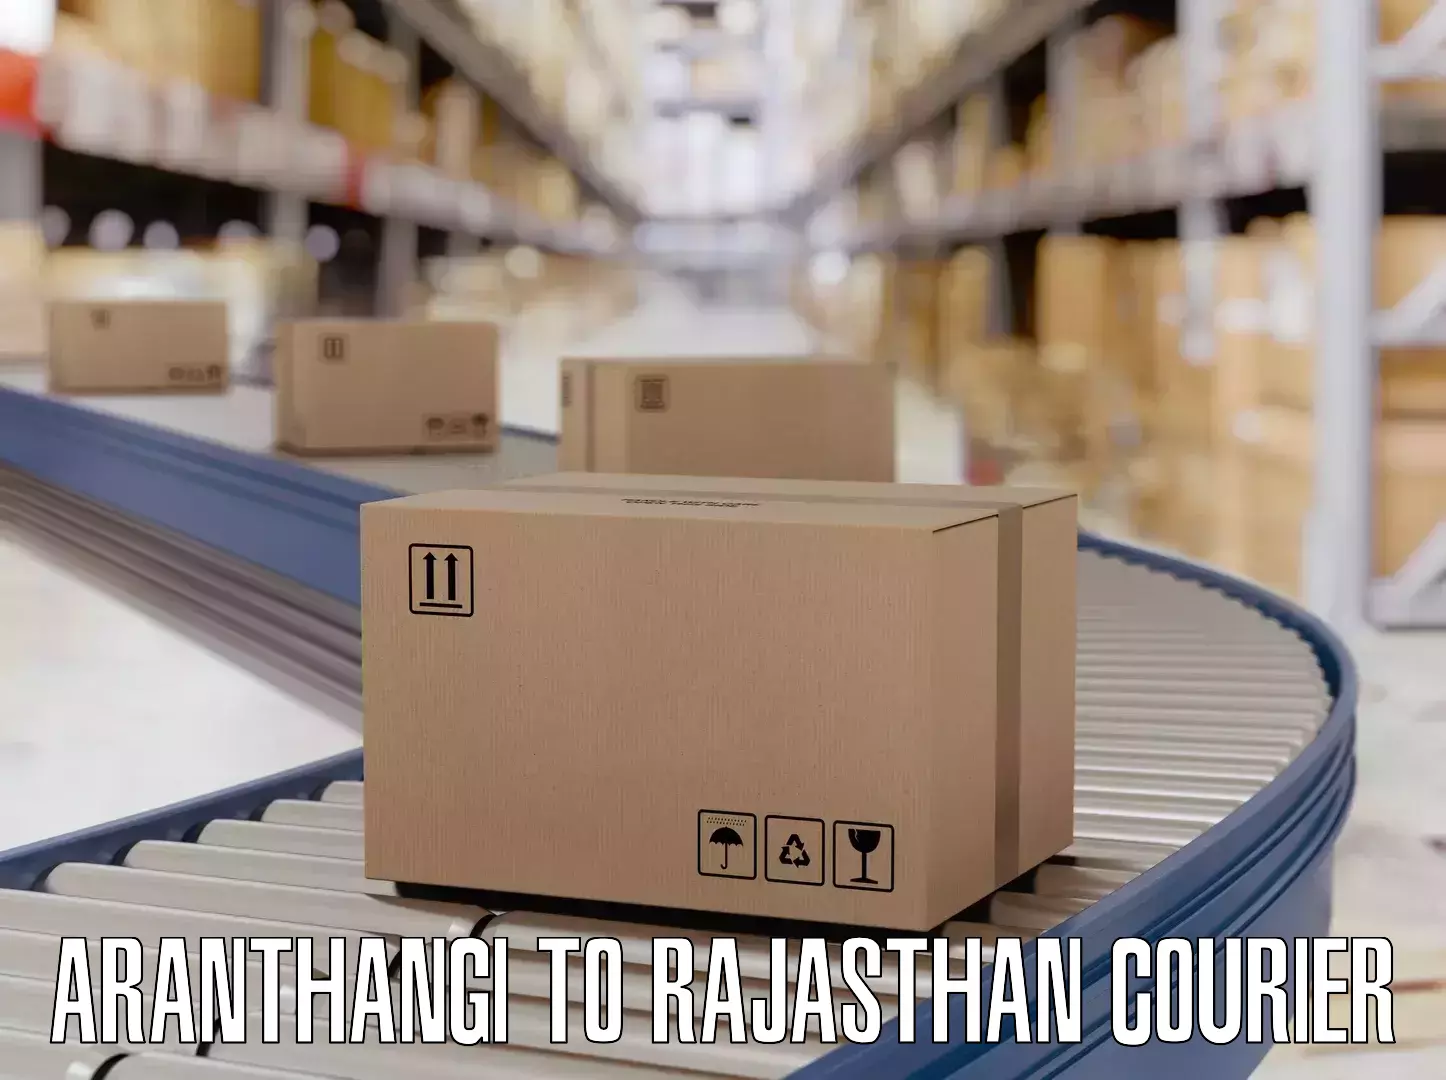 Luggage courier network Aranthangi to Banasthali Vidyapith